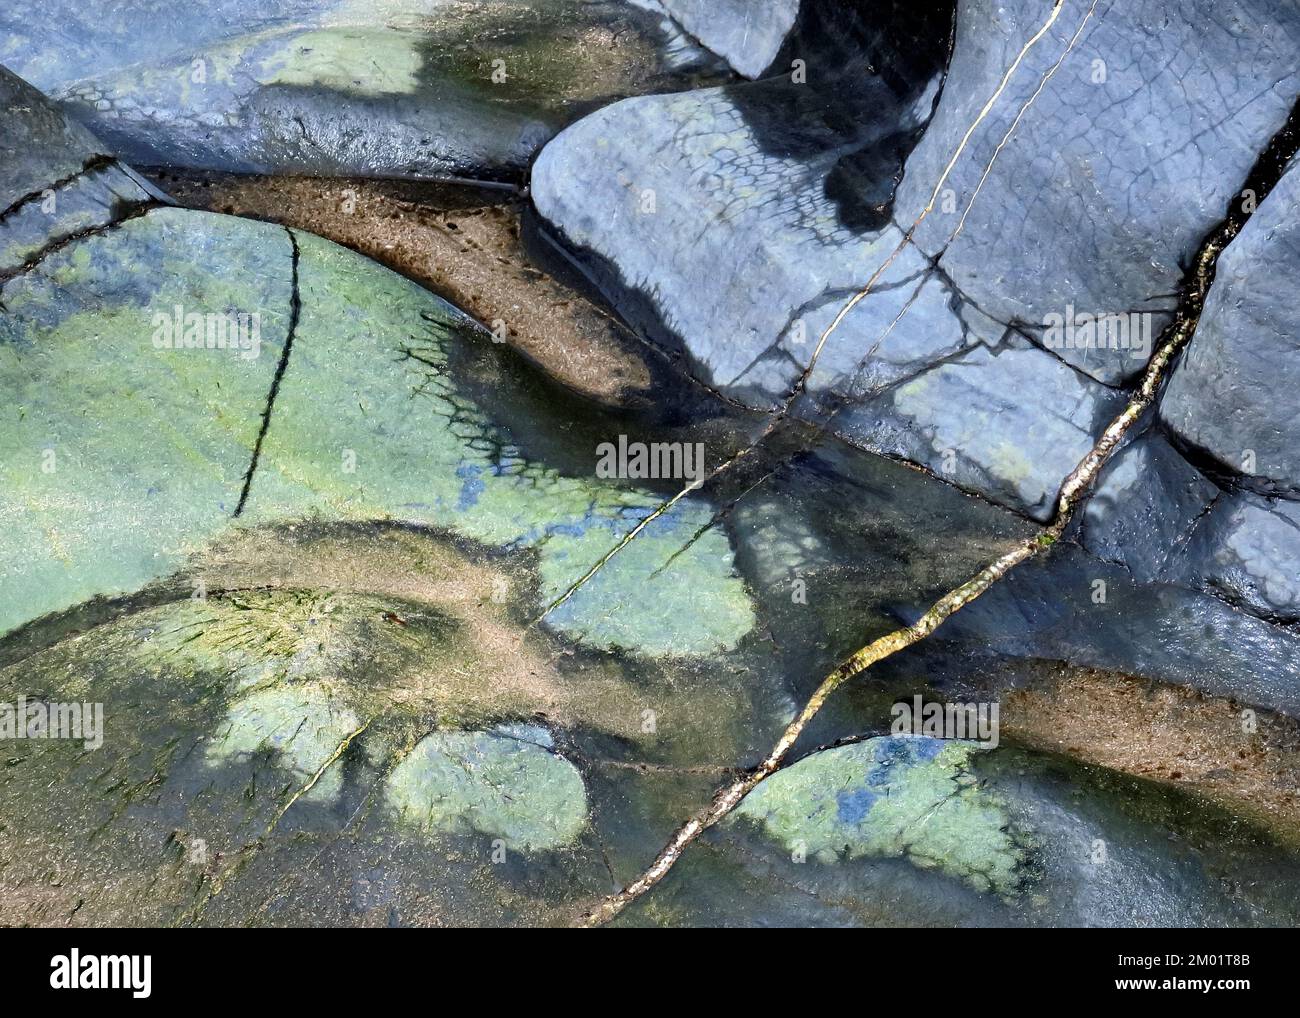 Naturfoto der Meeresgeologie mit zufälligen Mustern, Textur und Form, mit einer dezenten Farbpalette in einem halbabstrakten Stil an der Cardigan Bay Stockfoto